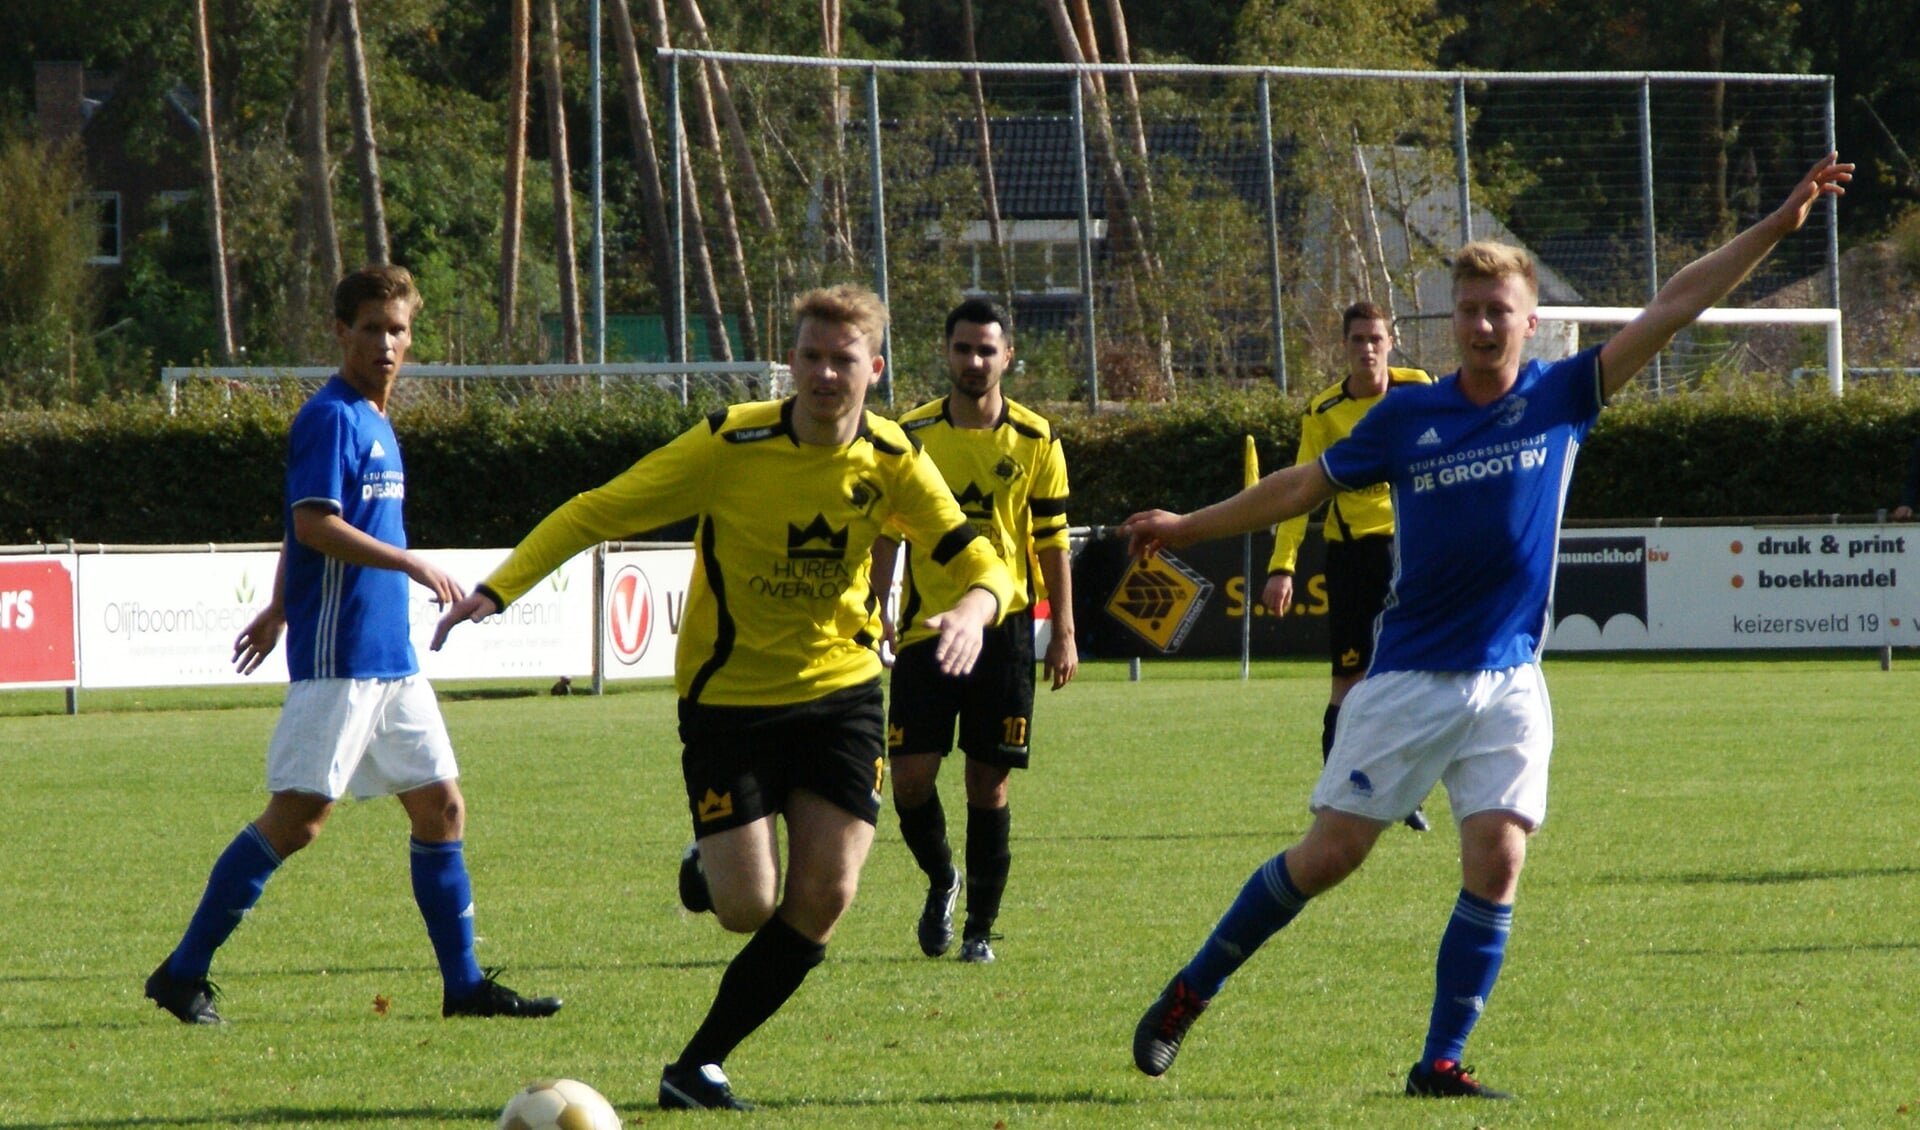 SSS'18, hier in actie tegen Erp, speelt donderdagavond in Uden de bekerwedstrijd tegen UDI'19/CSU 2. (foto: Voetbal-shoot.nl)